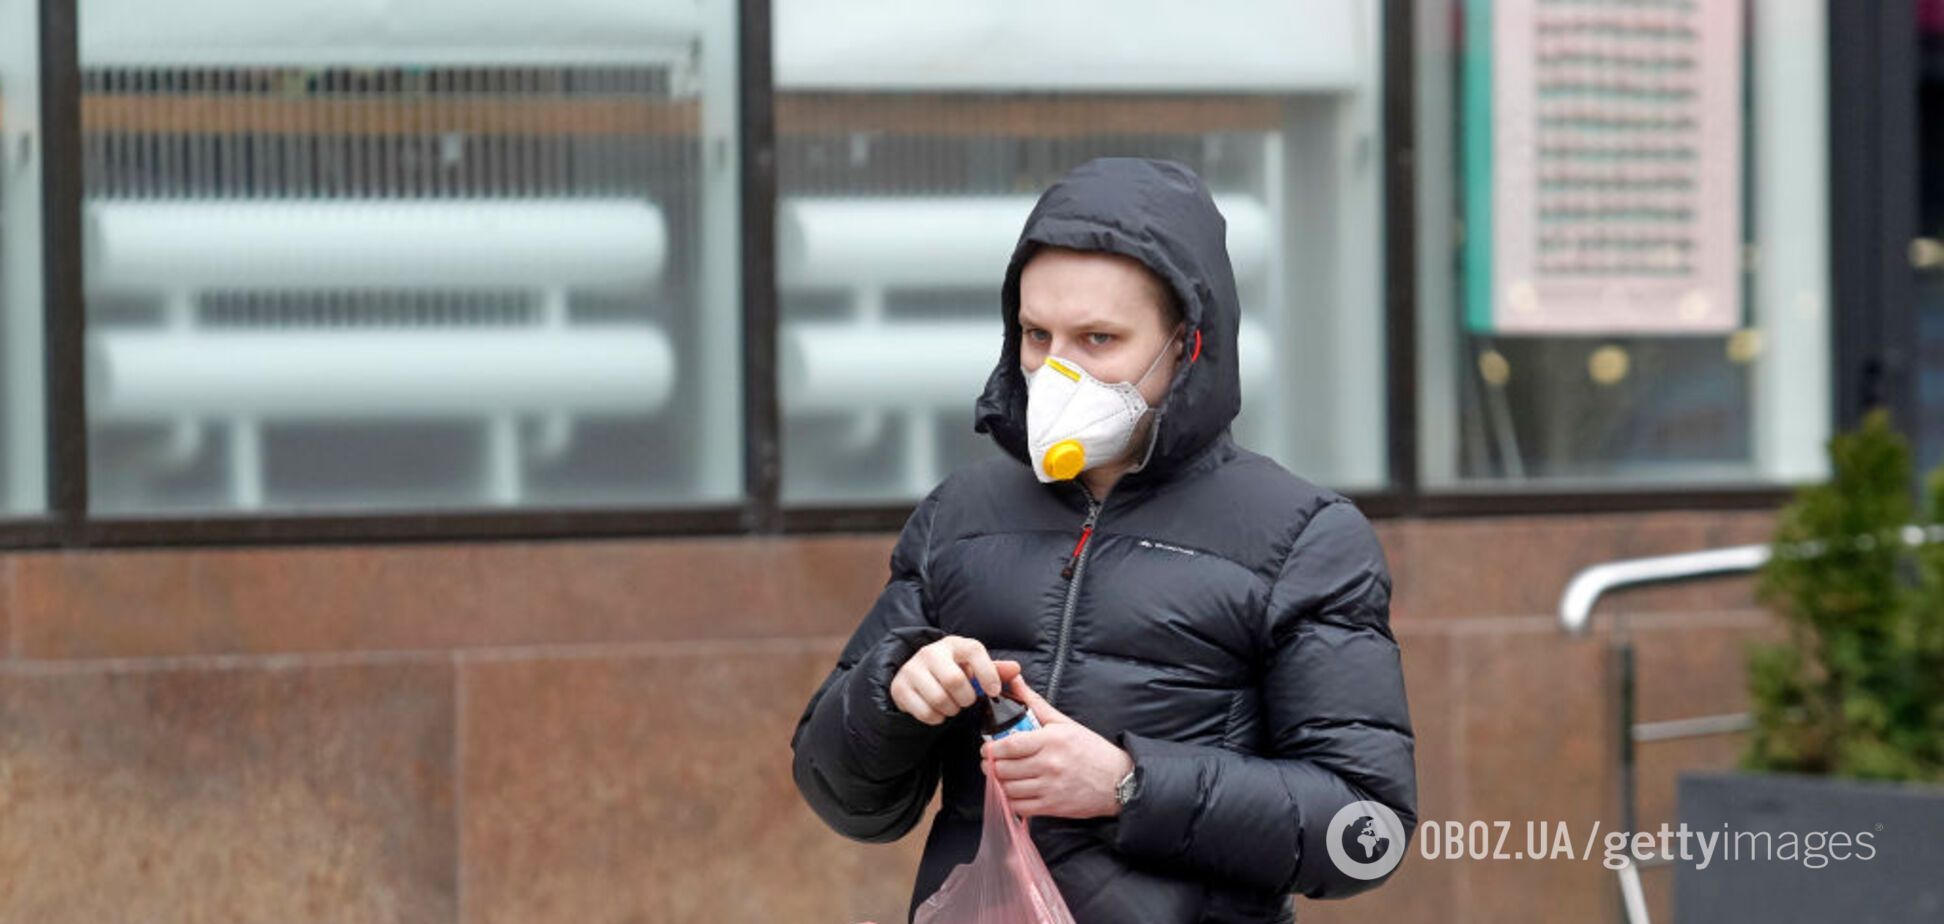 Пять смертей от коронавируса в Украине и 145 зараженных: Минздрав обнародовал данные на 25 марта